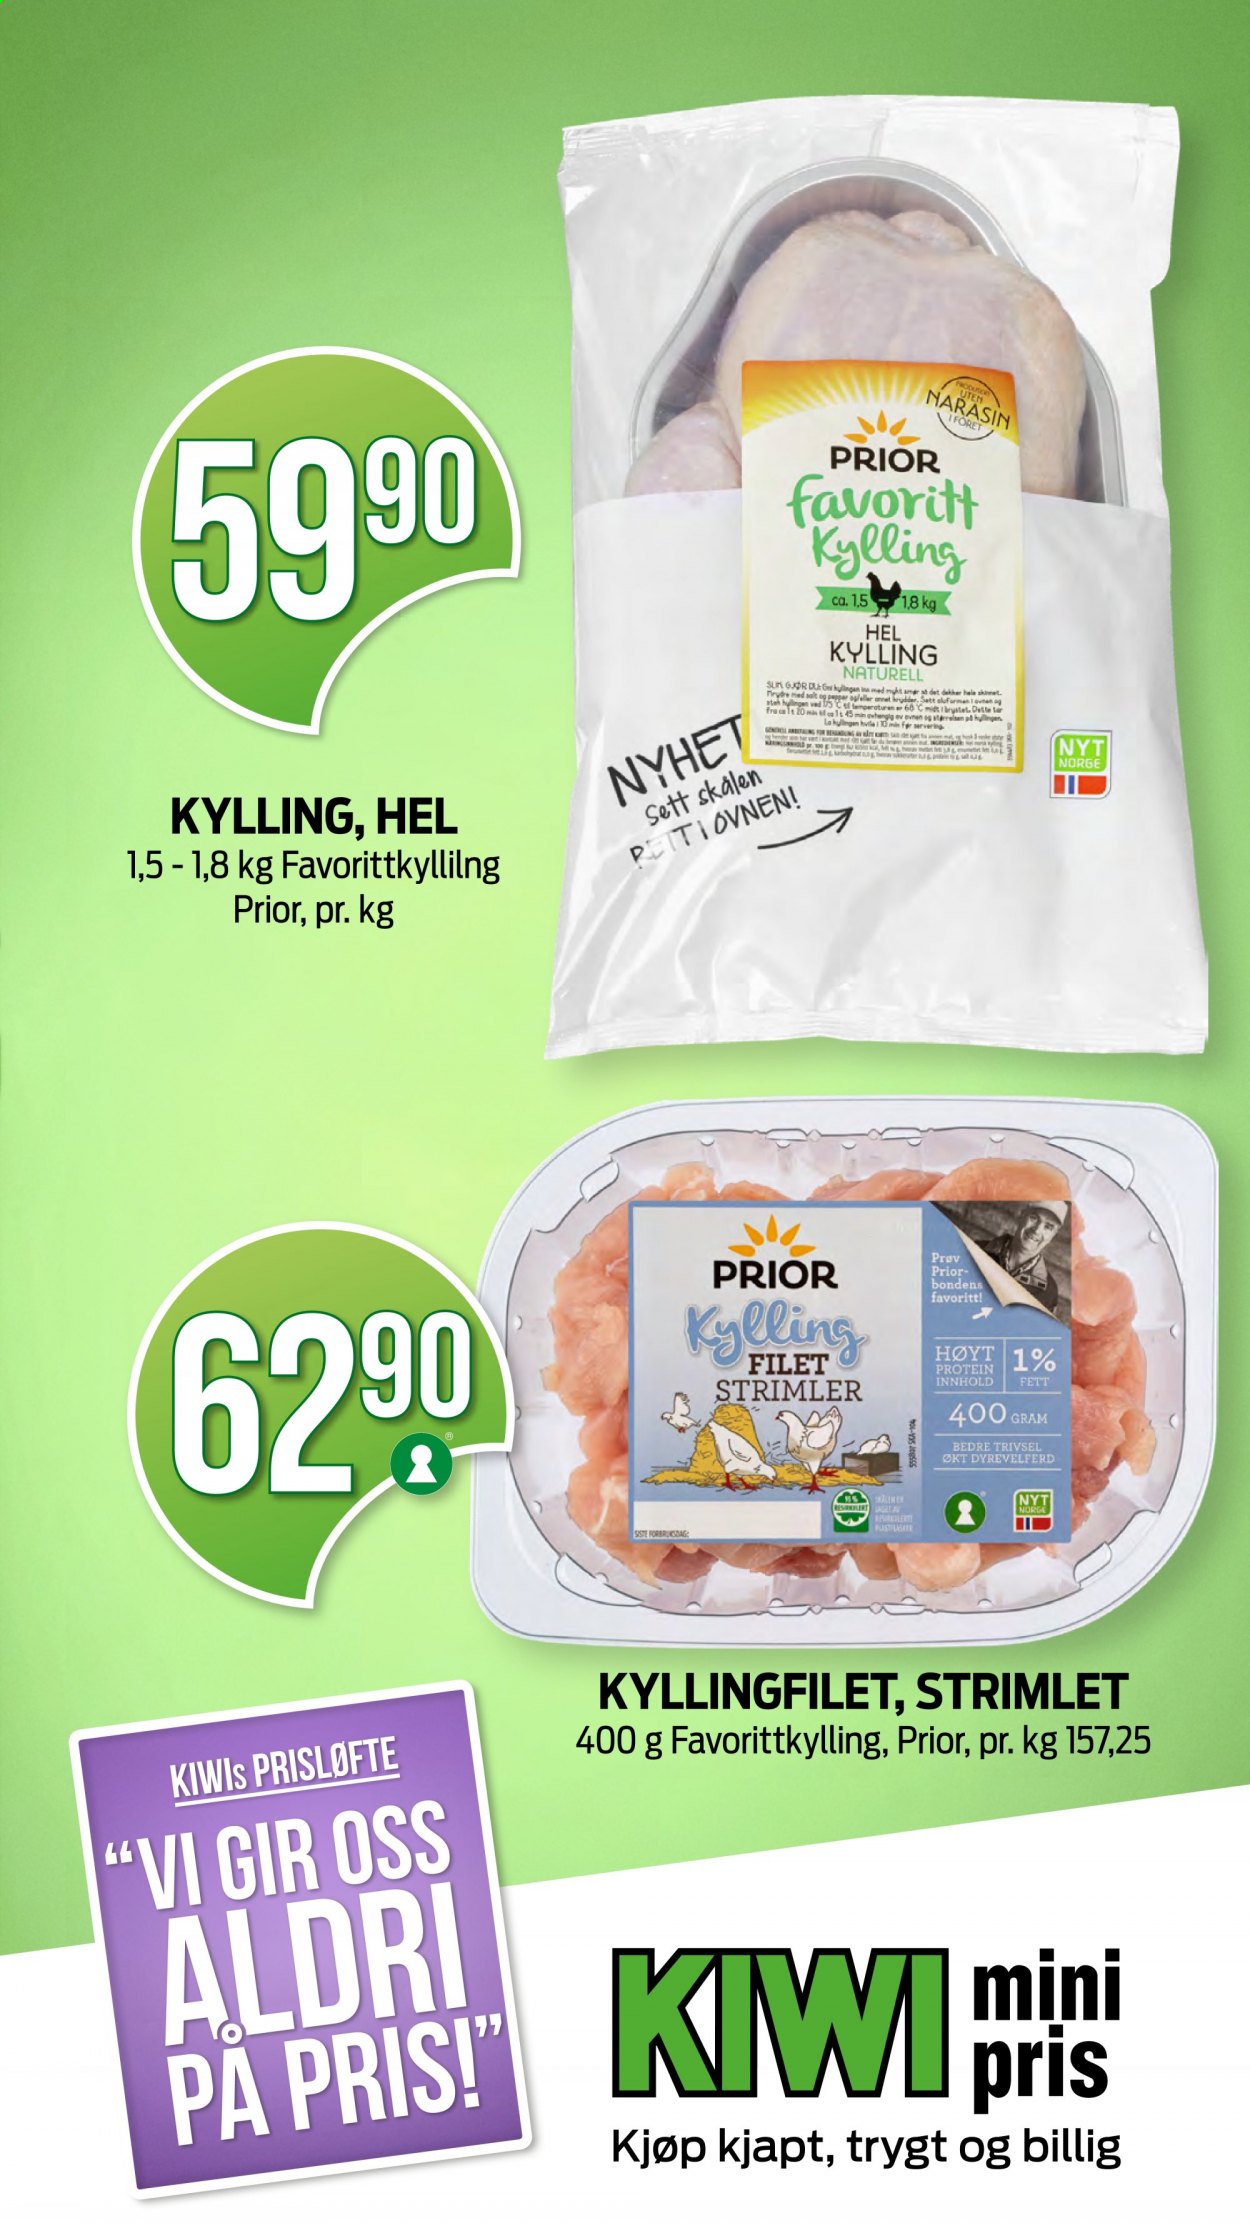 thumbnail - Kundeavis KIWI - 1.2.2021 - 7.2.2021 - Produkter fra tilbudsaviser - hel kylling, kyllingfilet, kyllingkjøtt. Side 30.